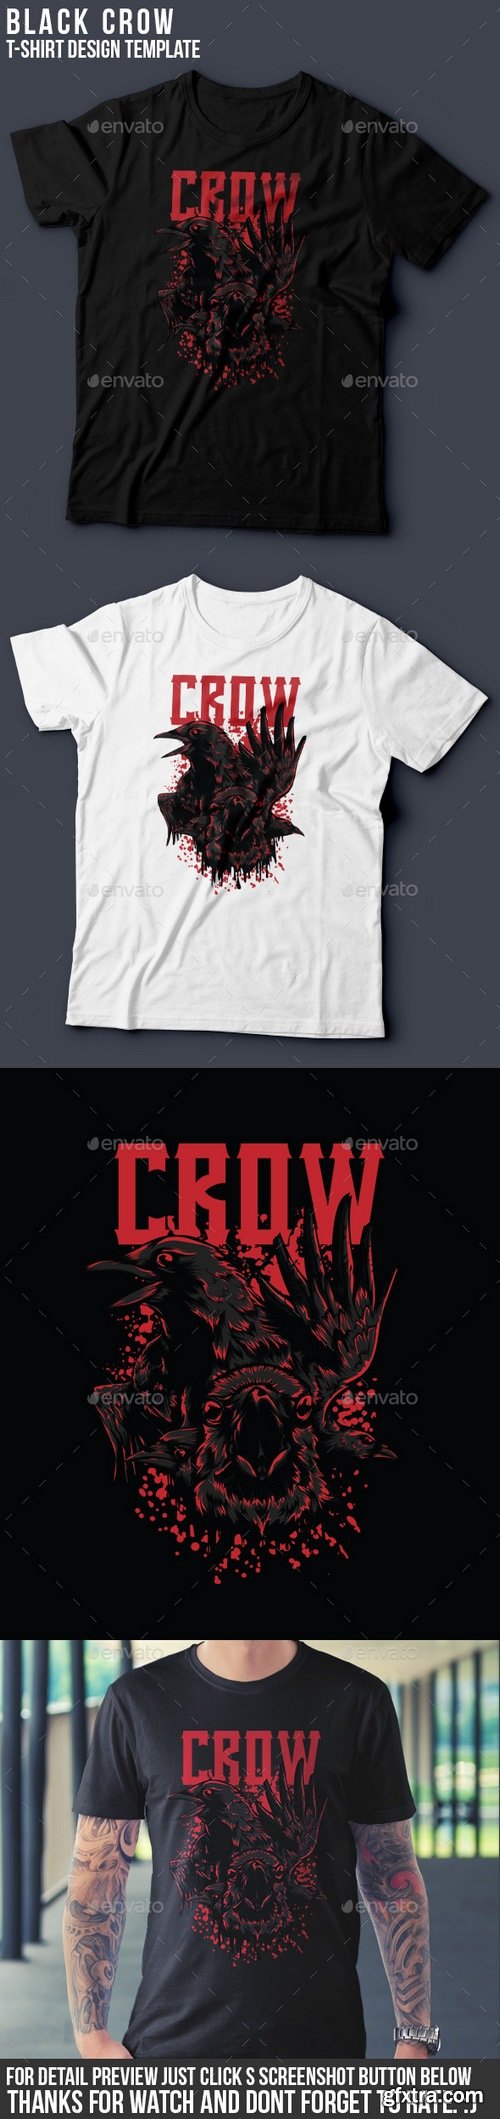 Graphicriver - Black Crow T-Shirt Design 8664681